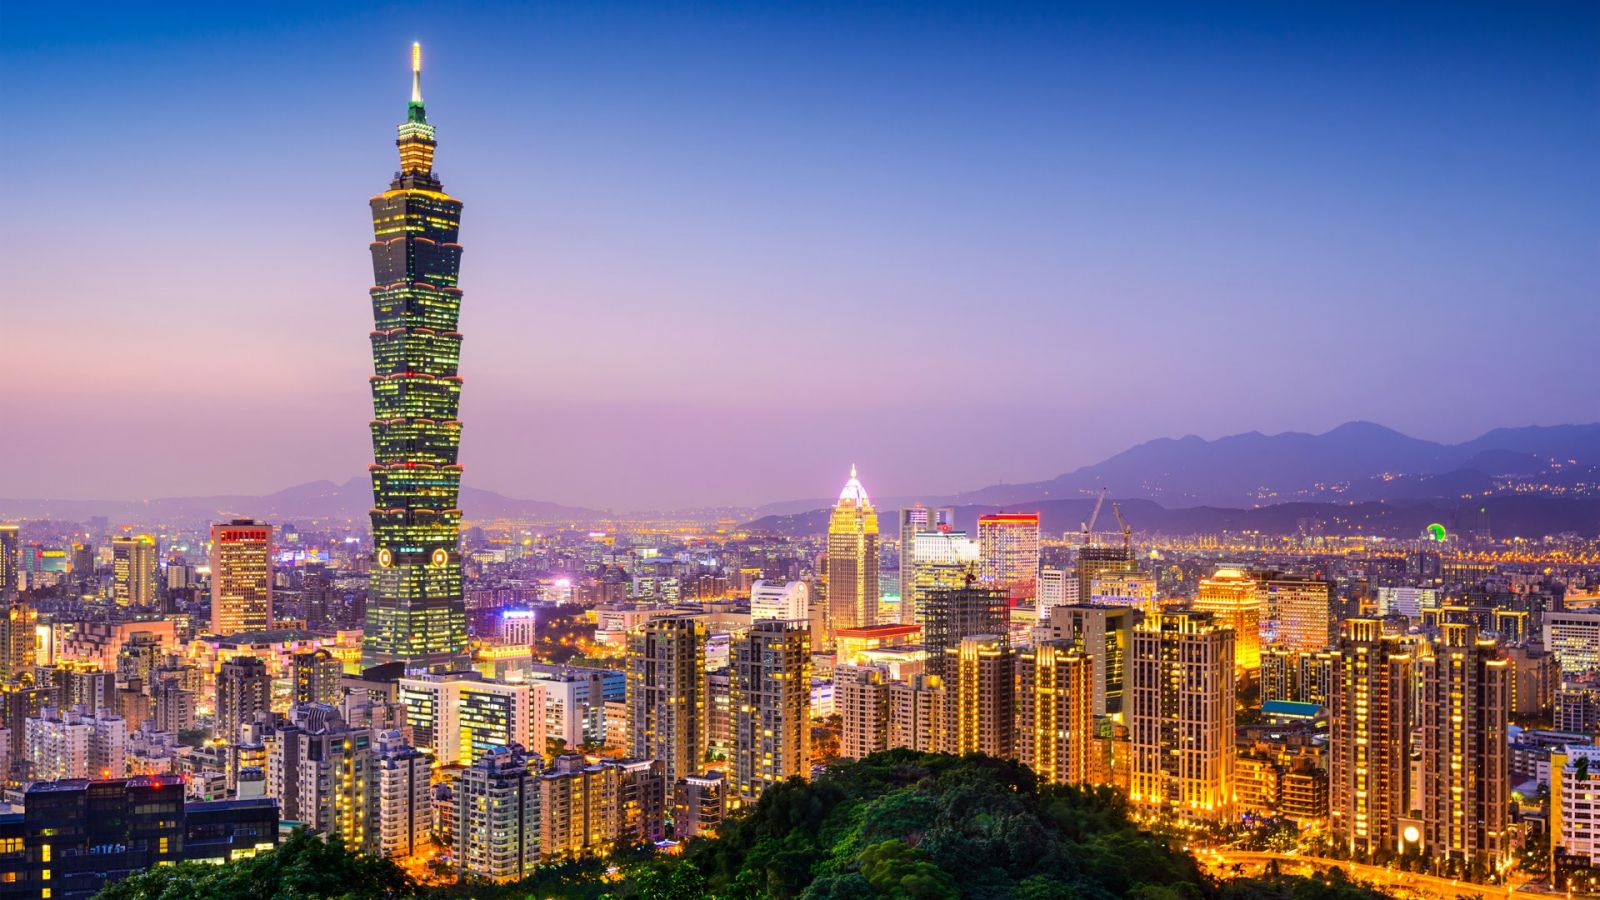 Toà nhà Taipei 101 cao chọc trời lung linh ánh đèn nổi bật giữa những toà nhà hiện đại khác